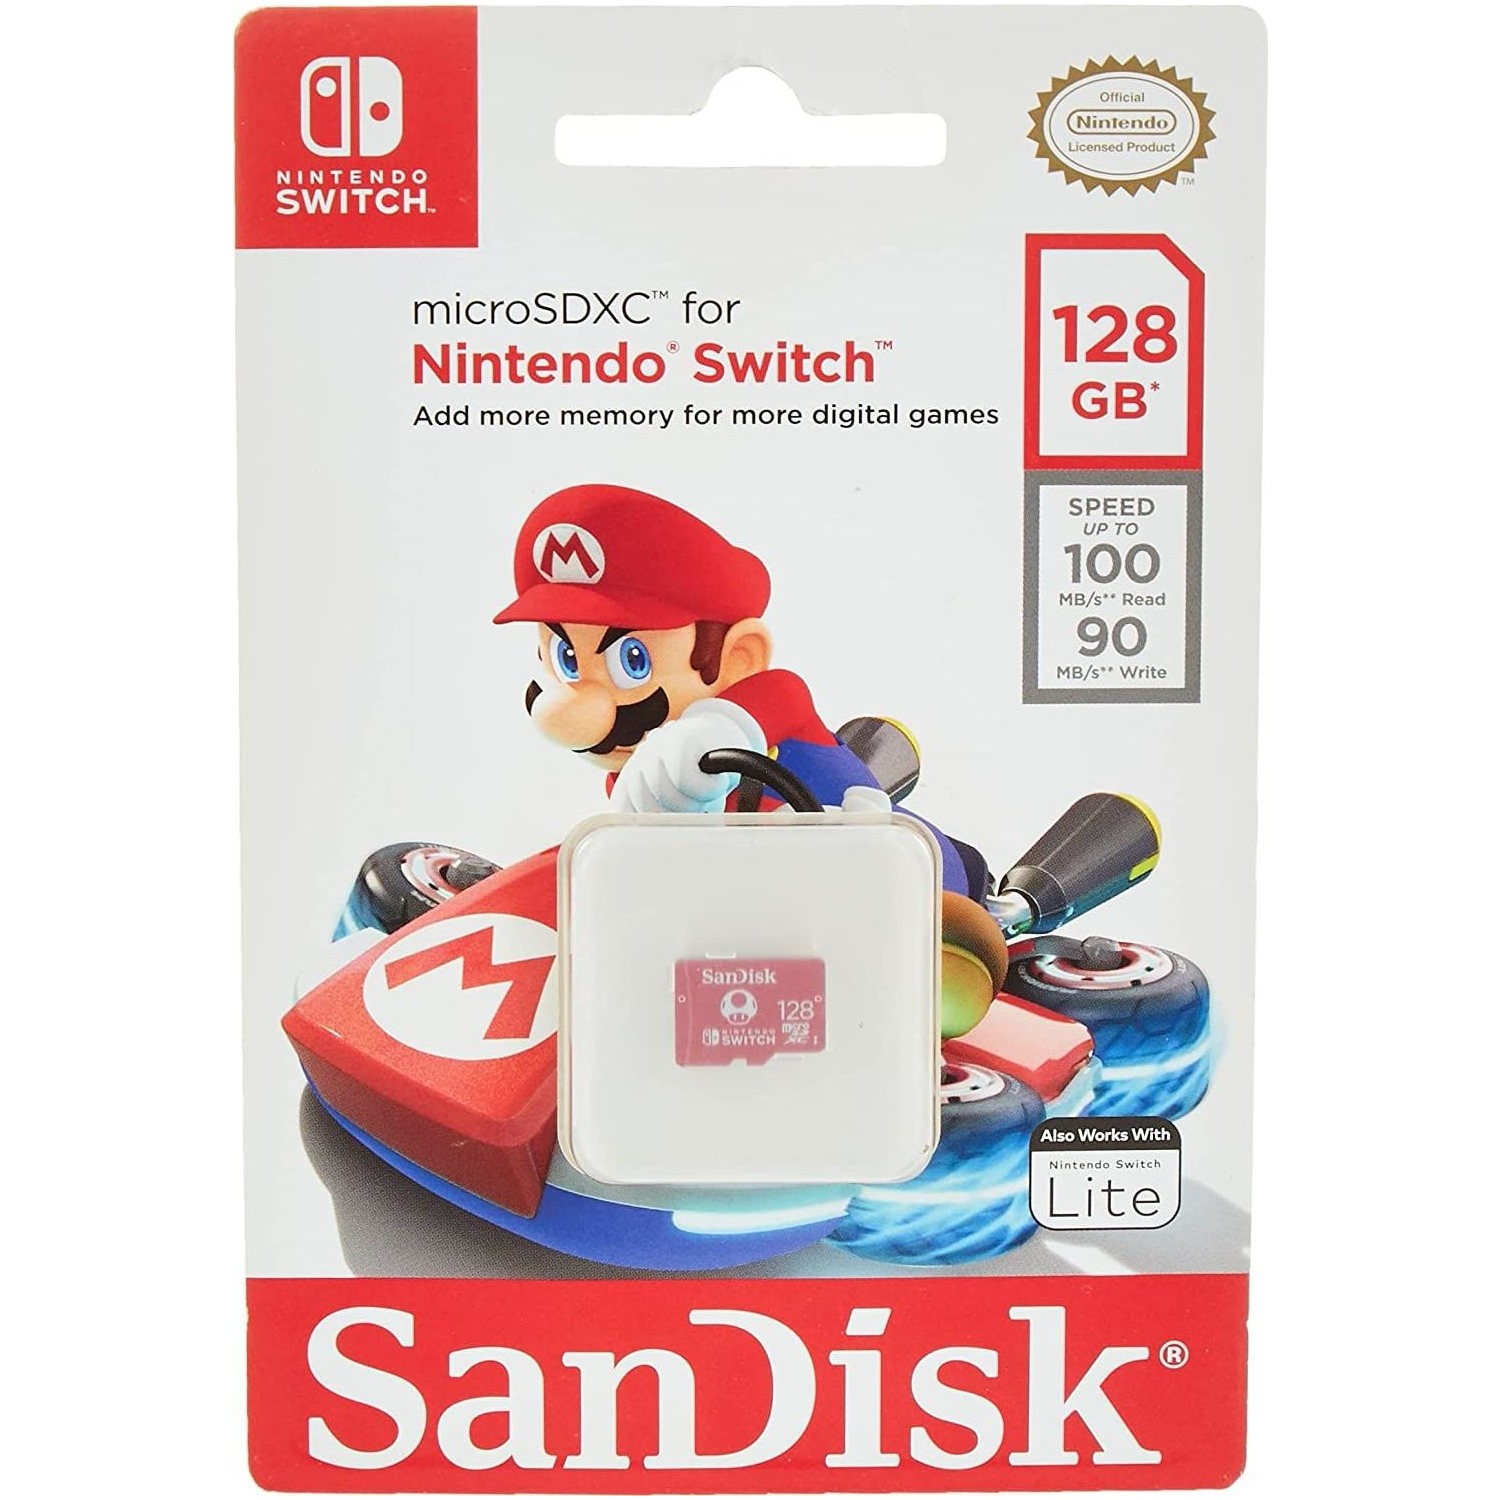 Immagine per MicroSD Sandisk per Nintendo Switch 128Gb XC da DIMOStore